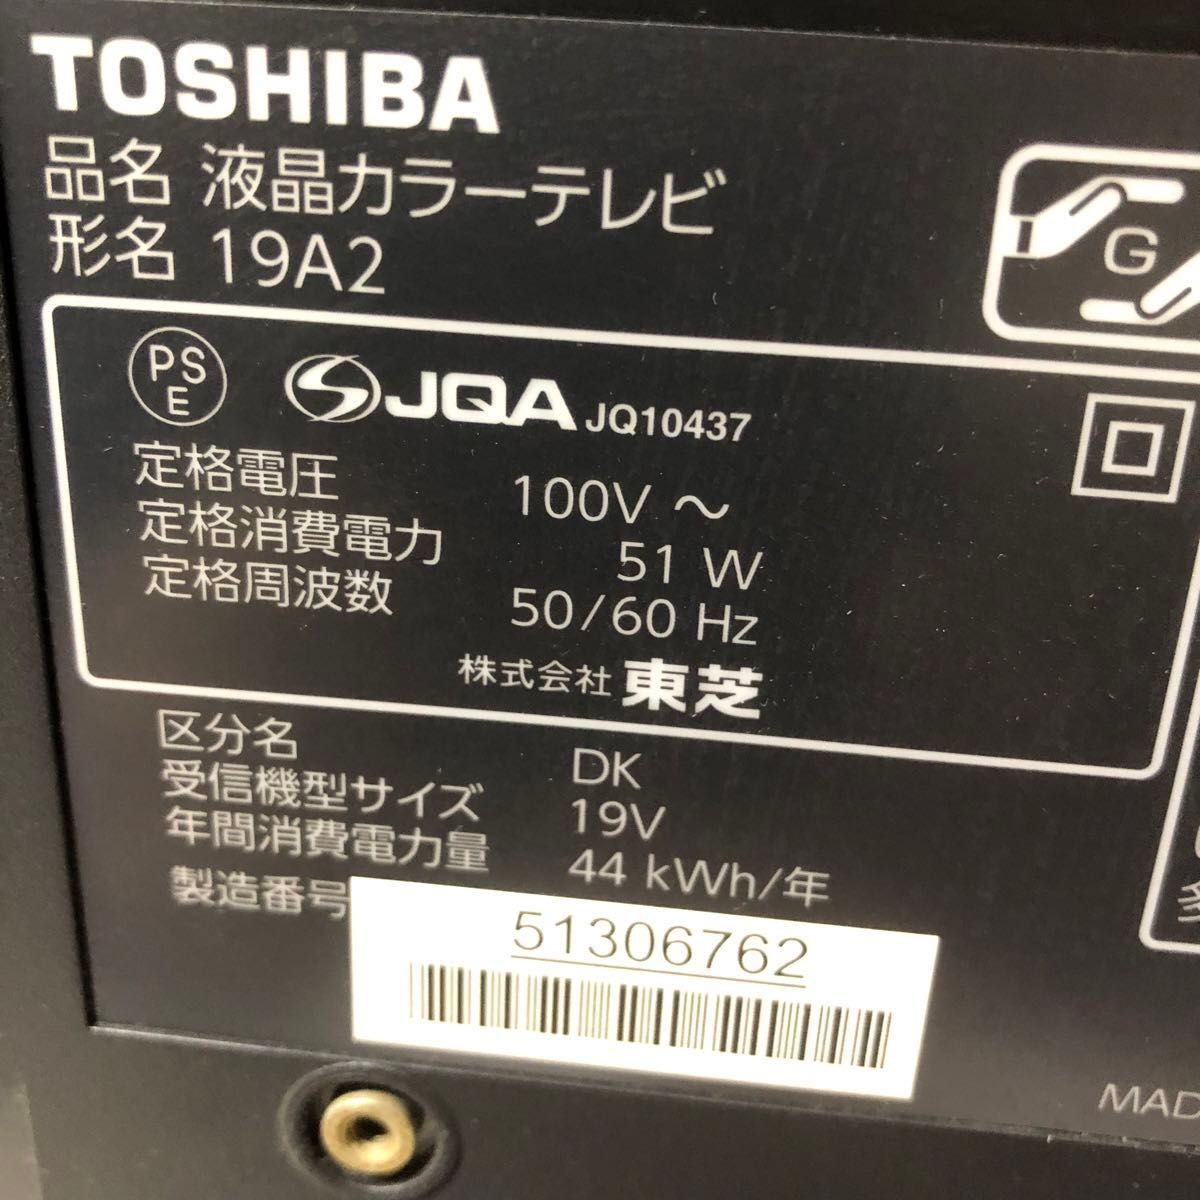 最終価格TOSHIBA LED REGZA 19V型 地上・BS・110度CSデジタルハイビジョン液晶19A2(K)